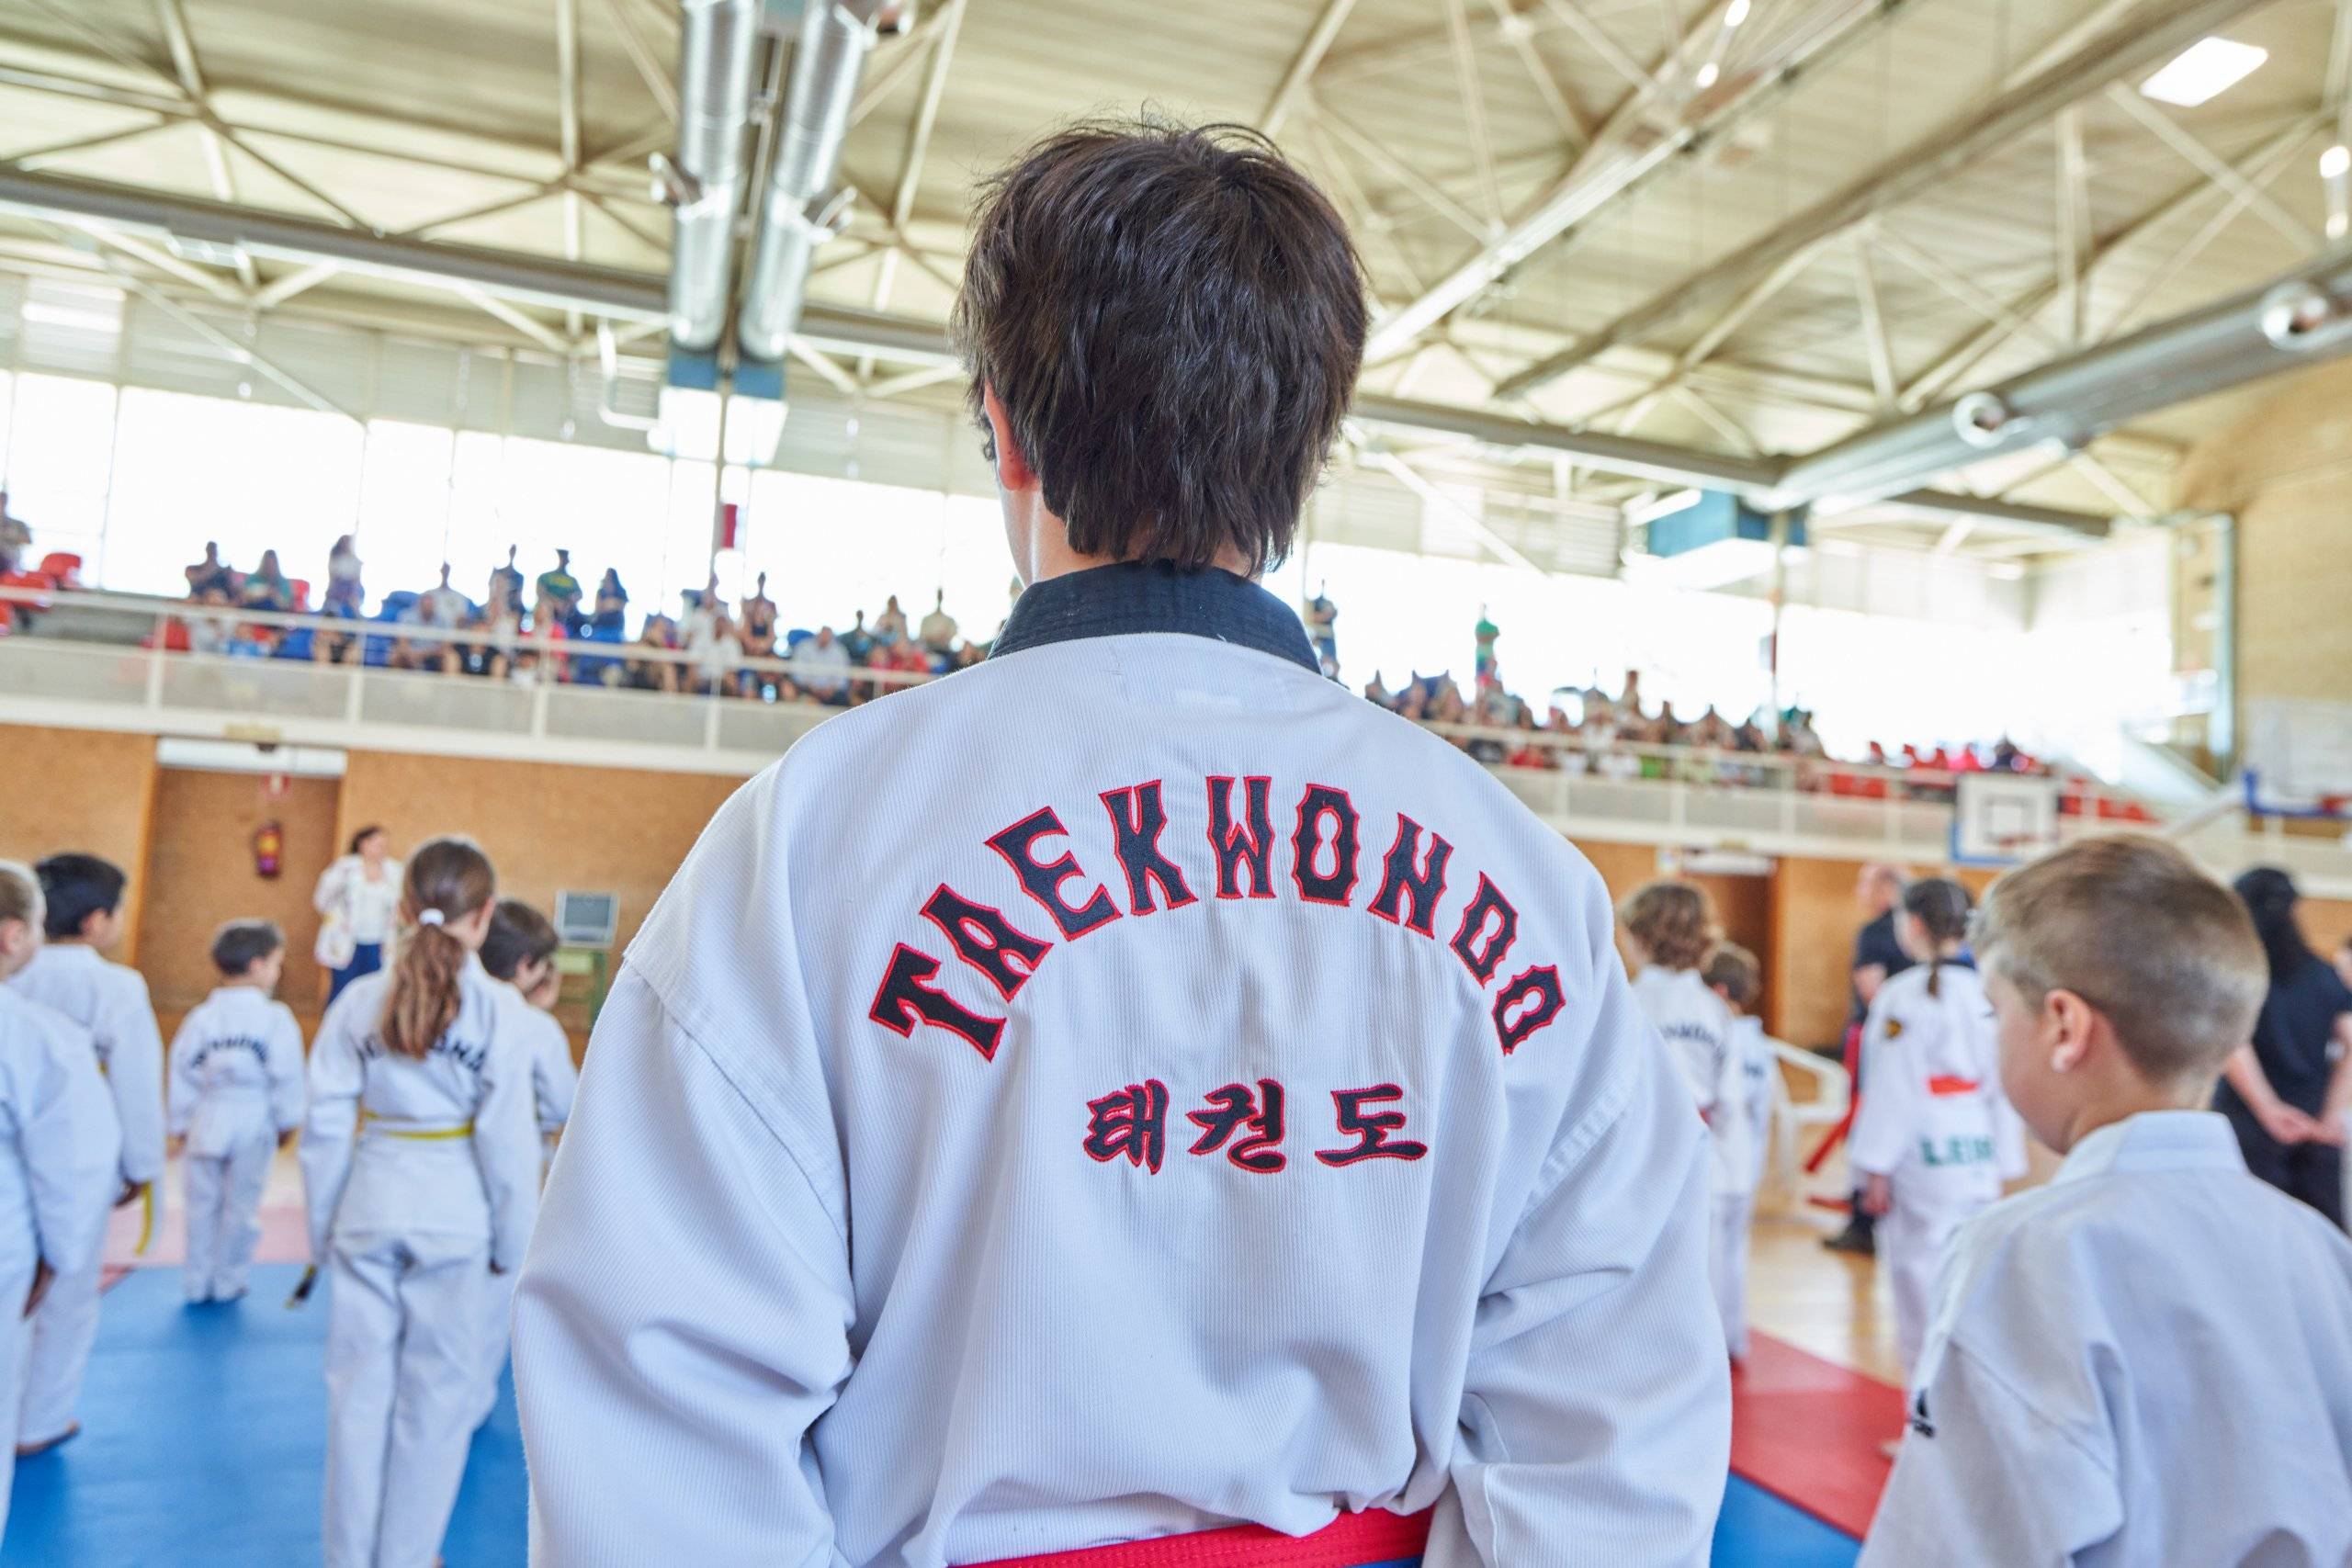 Participantes en el Campeonato de Taekwondo mirando al graderío durante la prueba.